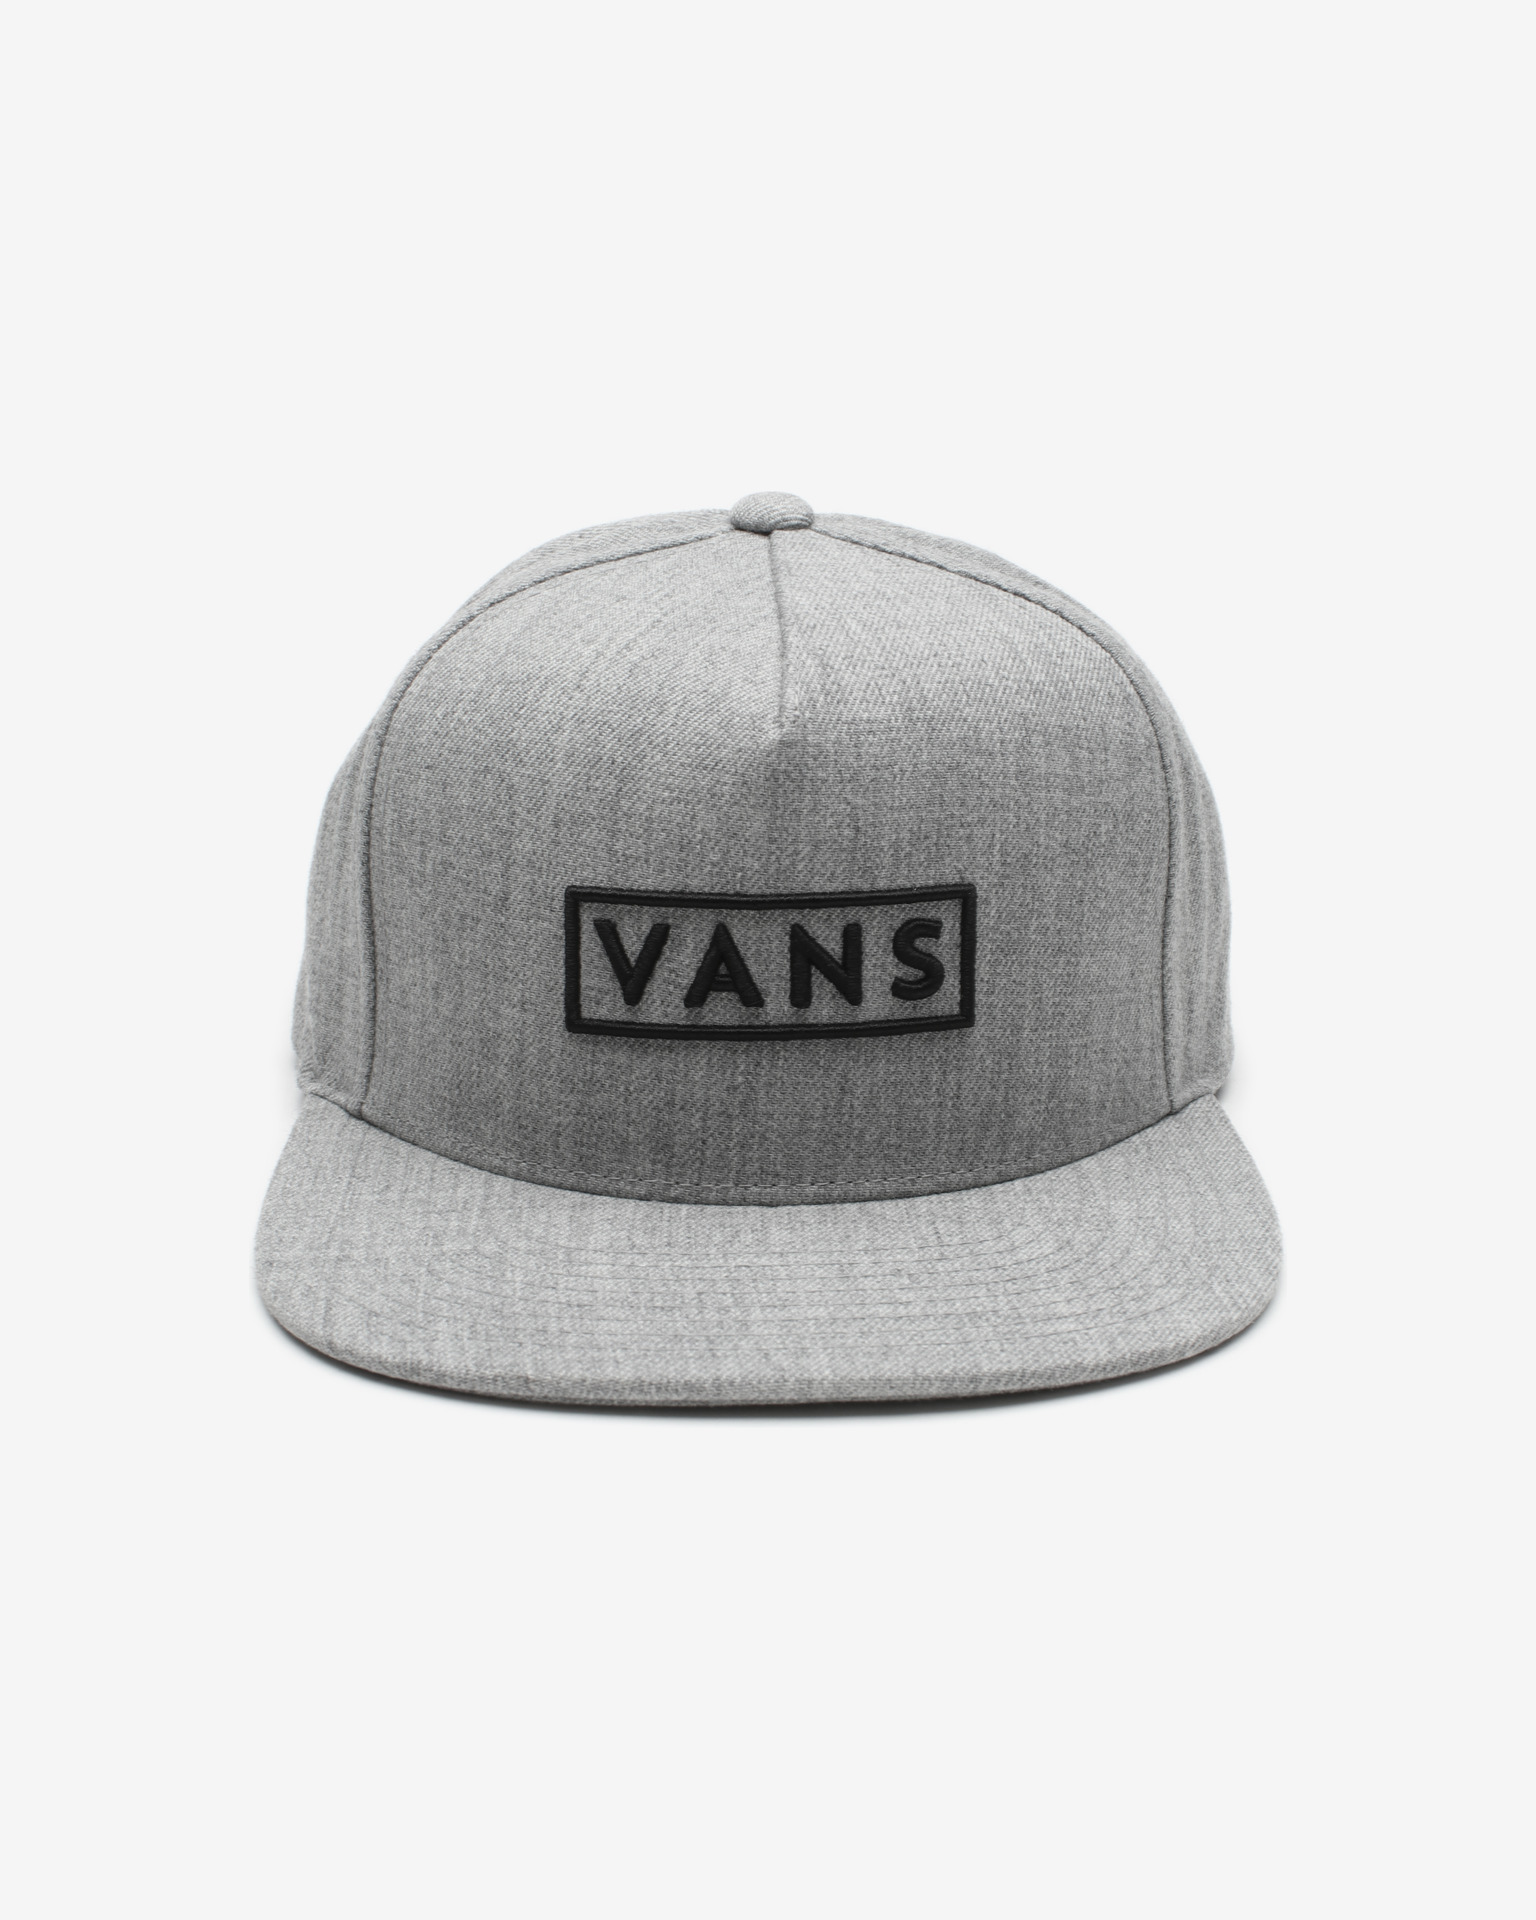 grey vans hat